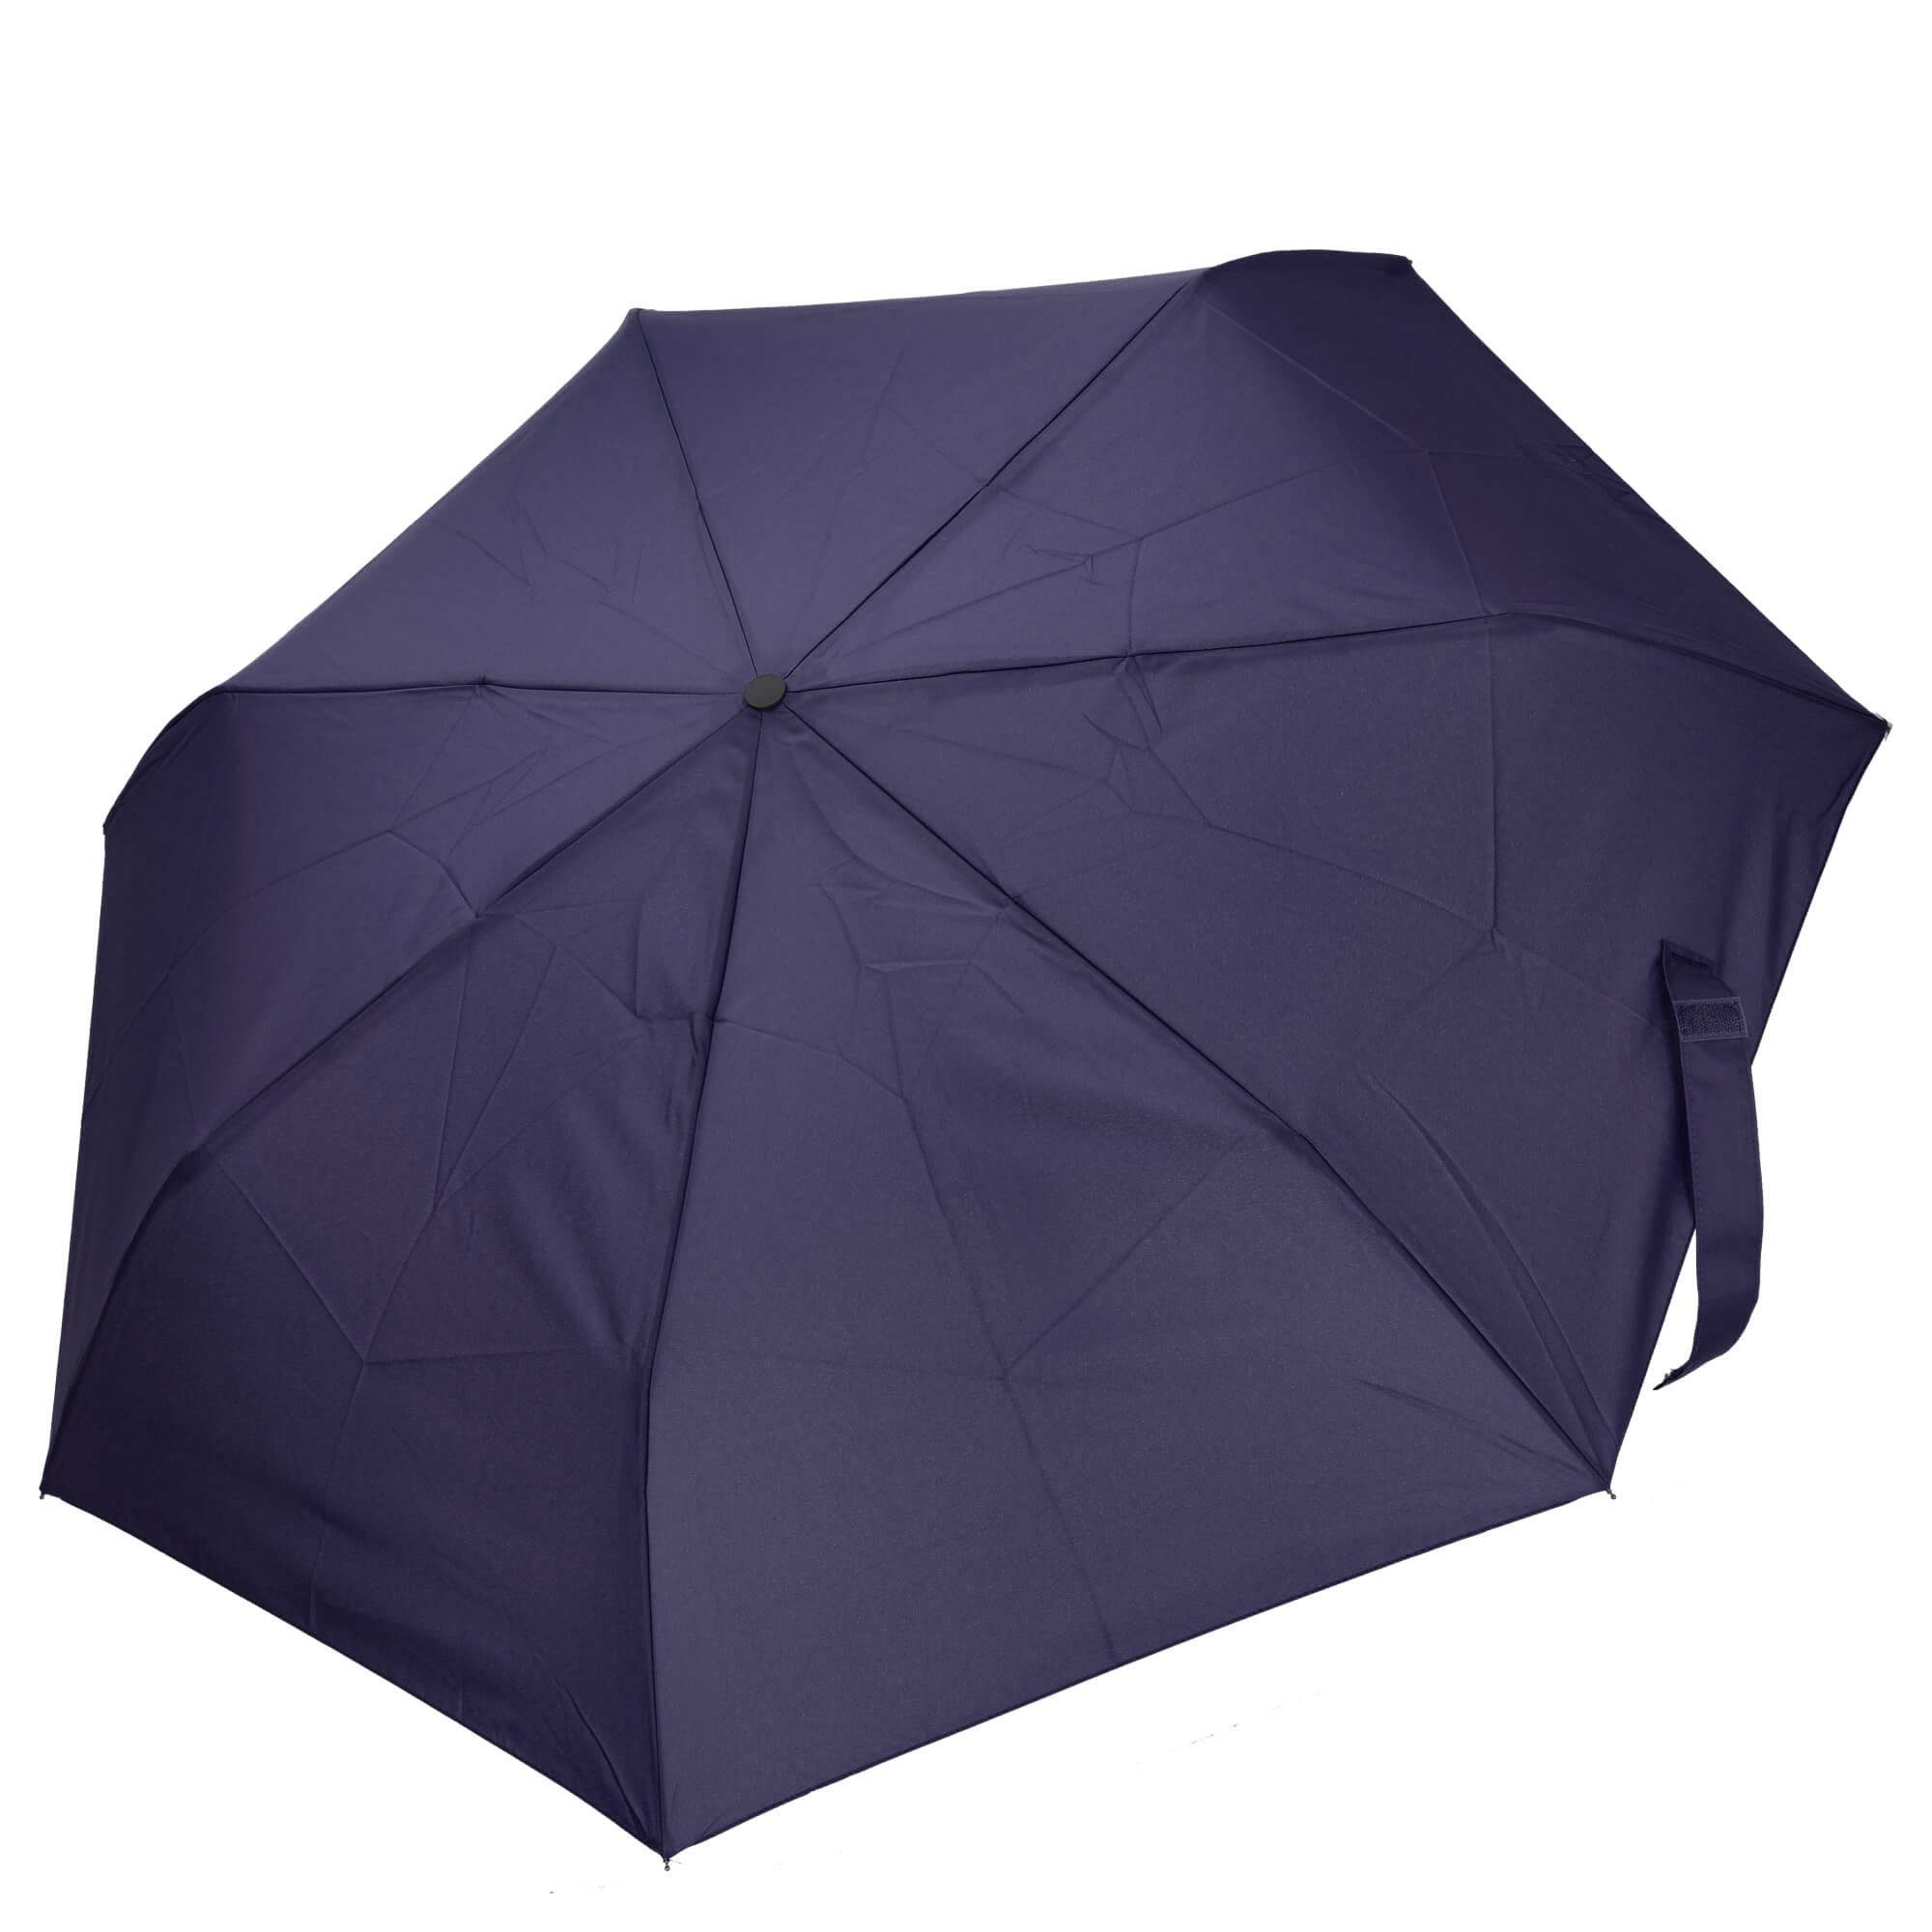 THE BRIDGE Taschenregenschirm Ombrelli - Regenschirm 96 cm blu navy | Taschenschirme